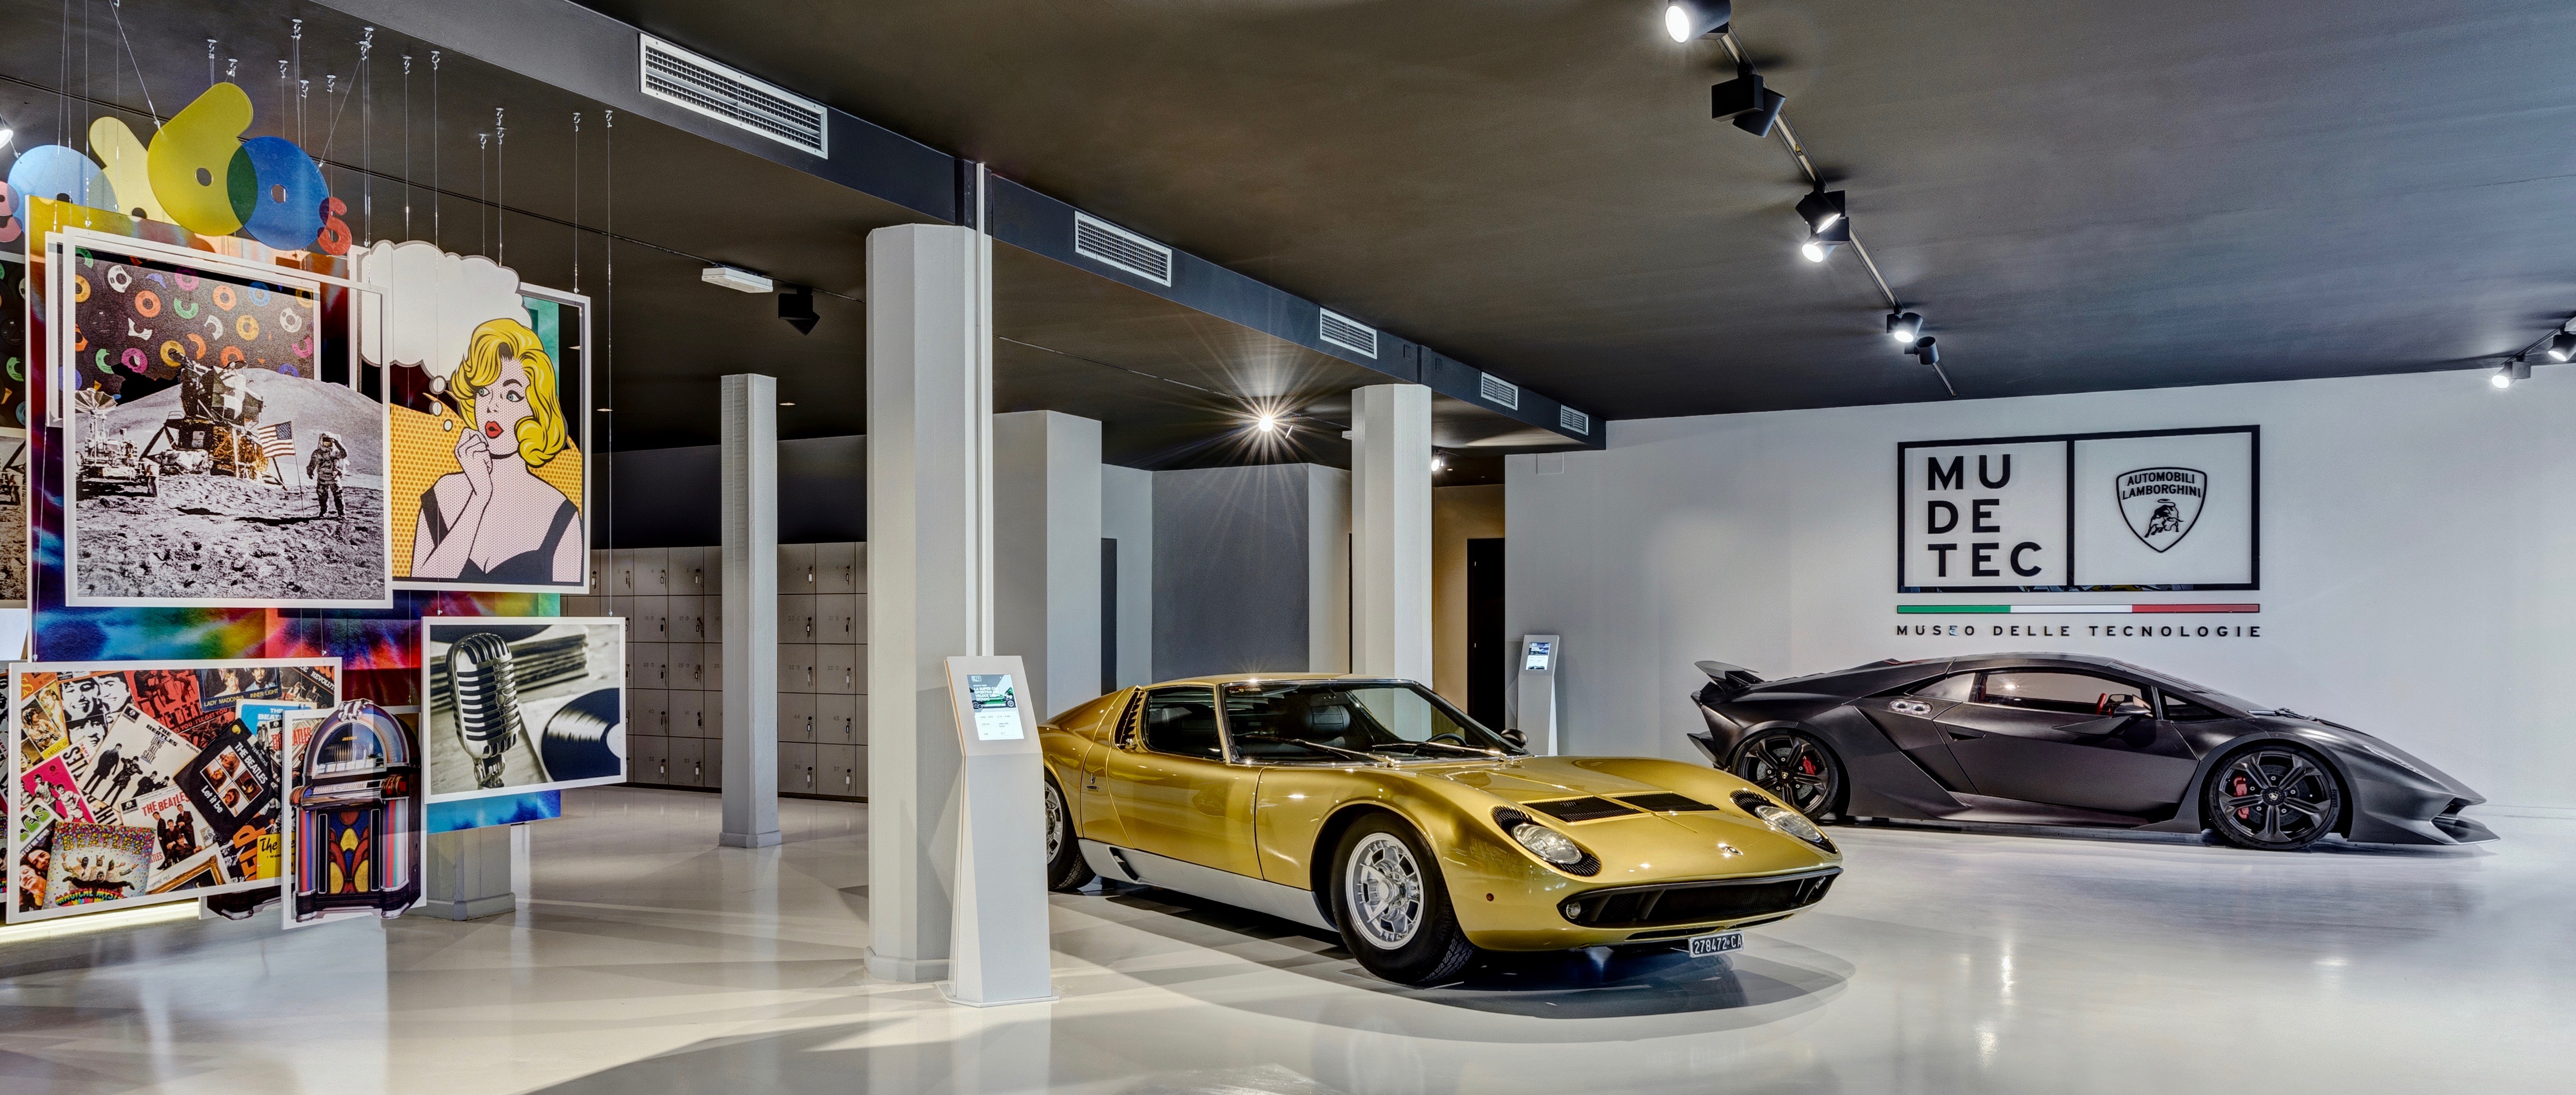 Car museums, Lamborghini museum rebranded, ClassicCars.com Journal